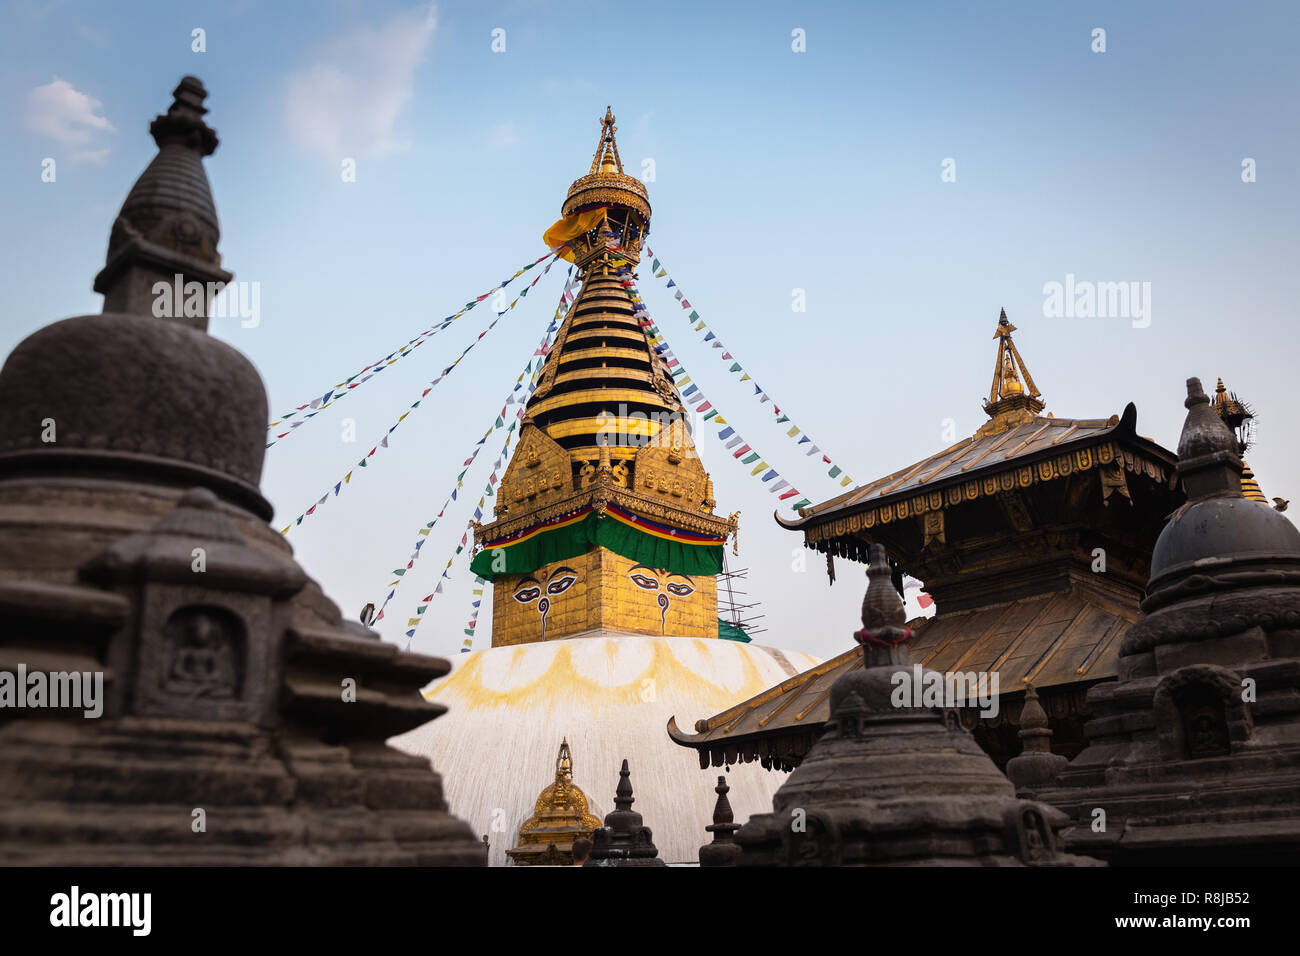 Main stupa and prayer flags at Swayambhunath (Monkey Temple), Kathmandu, Nepal, Asia Stock Photo